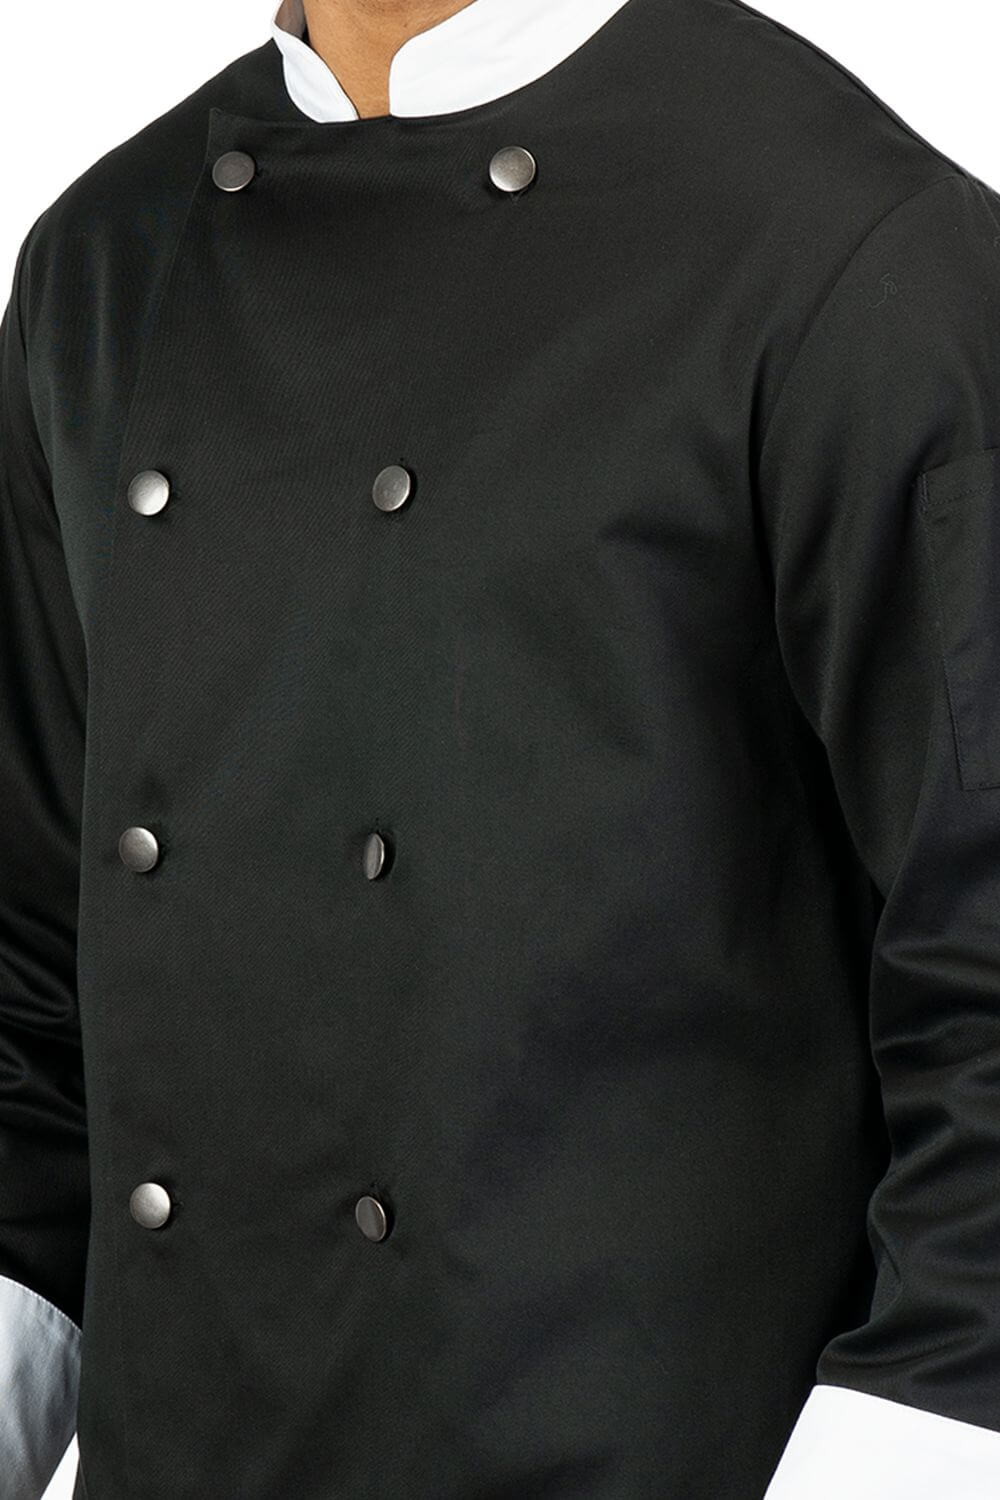 Black & White Cotton Blend Chef Coat